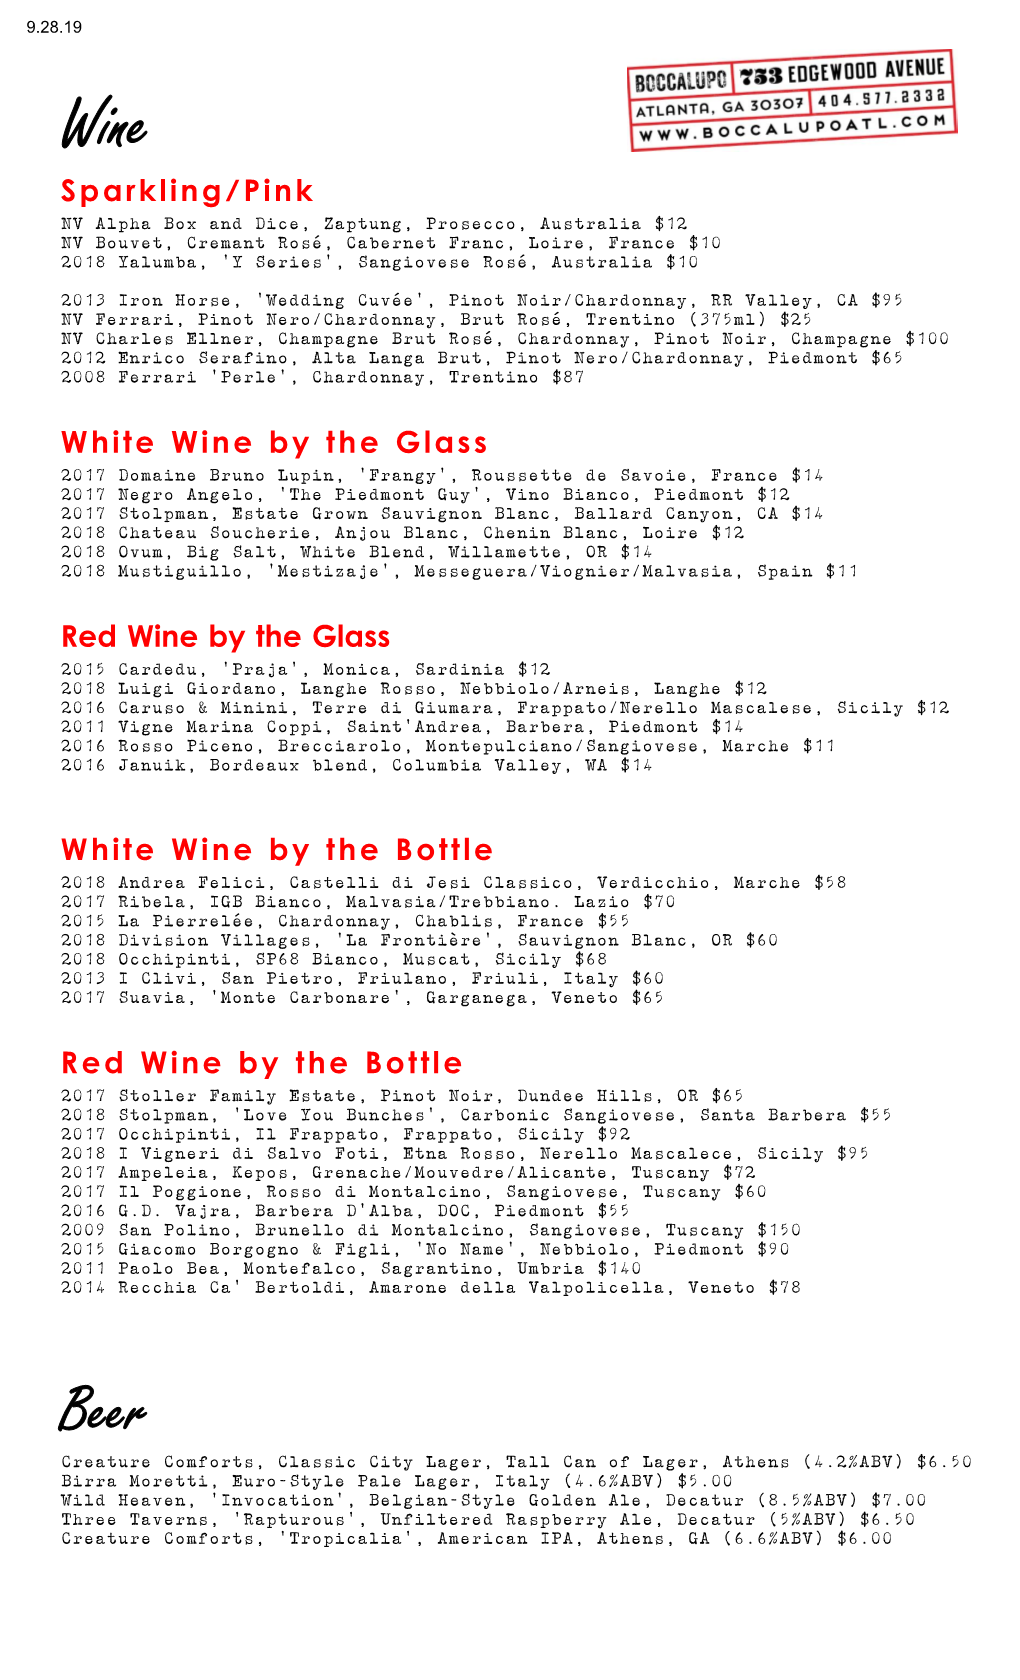 White Wine by the Bottle 2018 Andrea Felici, Castelli Di Jesi Classico, Verdicchio, Marche $58 2017 Ribela, IGB Bianco, Malvasia/Trebbiano